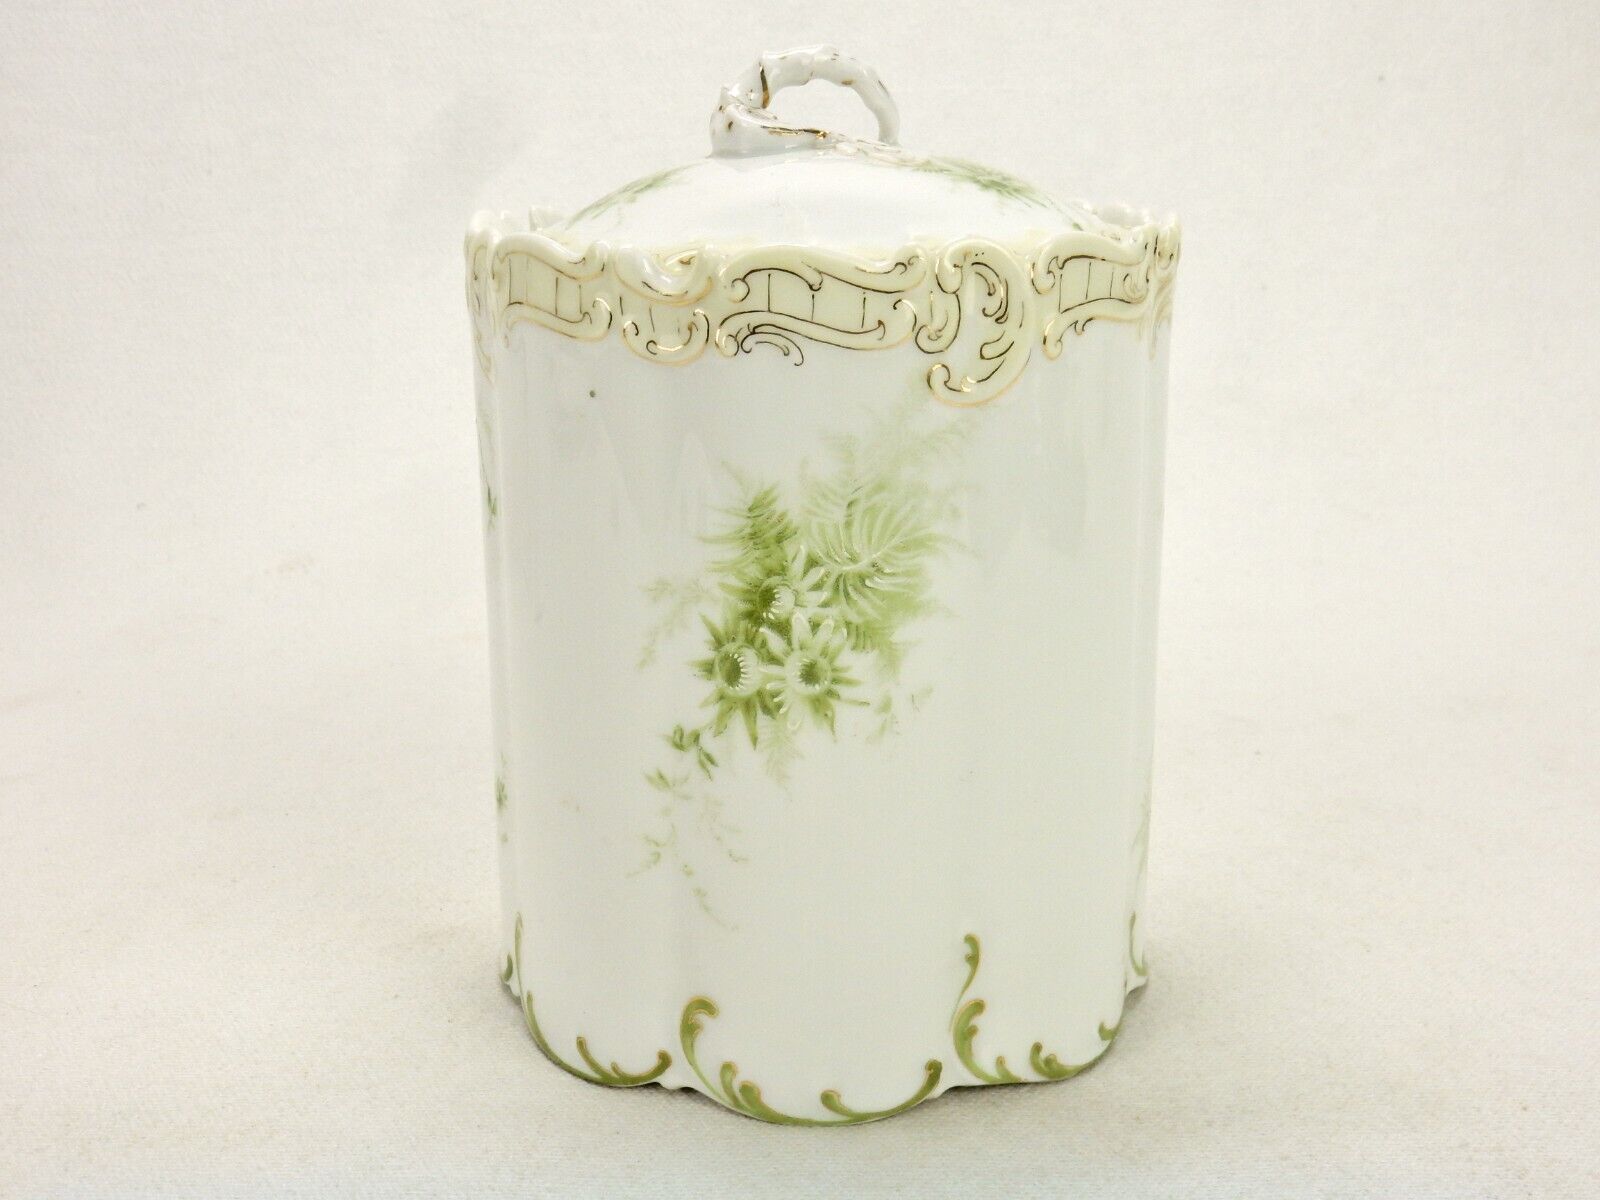 Porcelain Biscuit/Cracker Jar, Rosenthal Monbijou, Vintage Bavaria Germany CJ-11